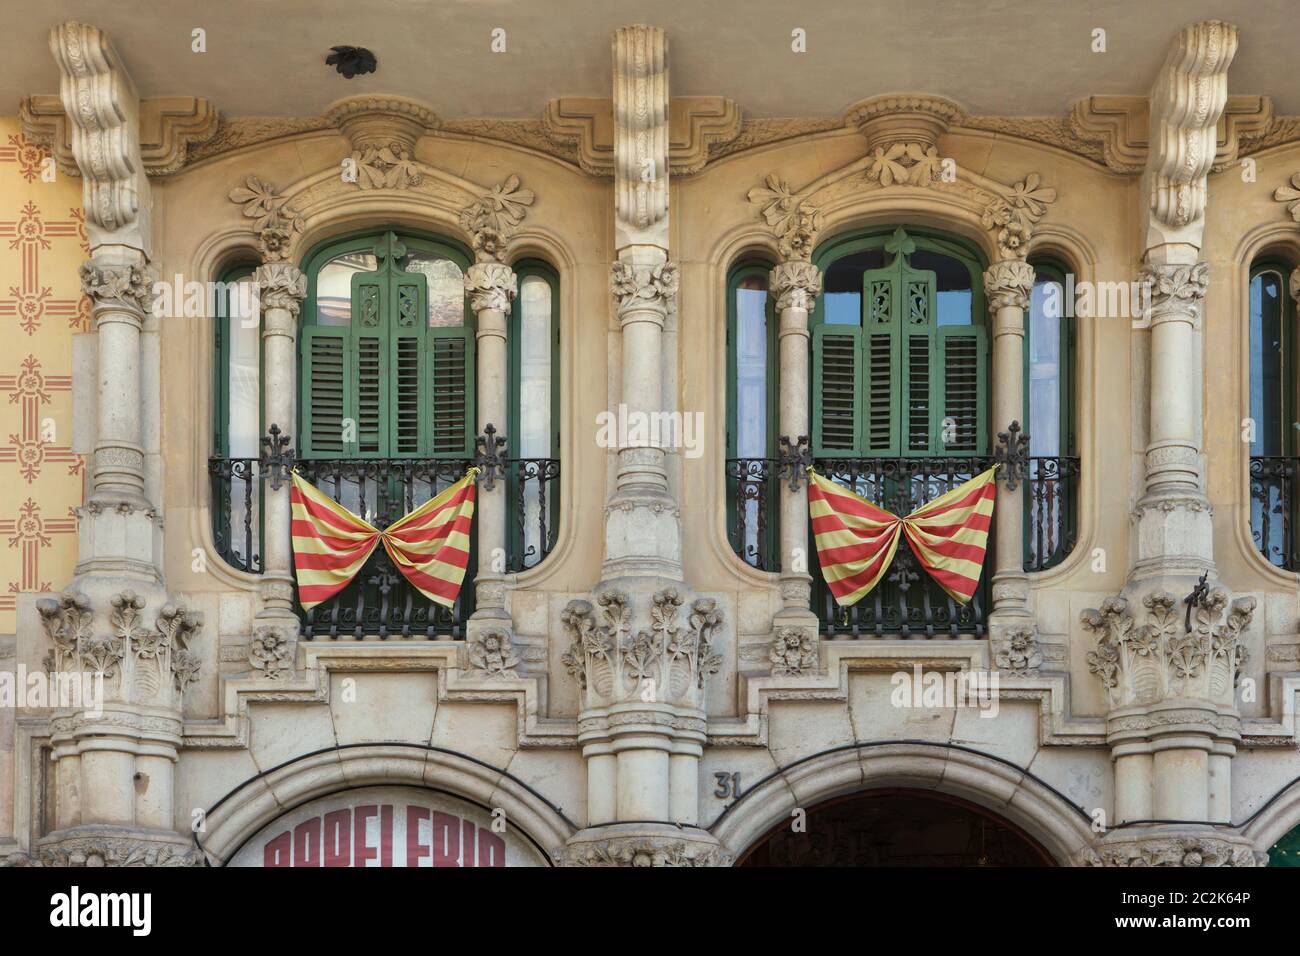 Bandiere nazionali catalane poste sui balconi francesi sui casi Ramos a Barcellona, Catalogna, Spagna. L'edificio, progettato dall'architetto modernista catalano Jaume Torres i Grau, è stato costruito tra il 1906 e il 1908 sulla Plaça de Lesseps (Plaza de Lesseps). Foto Stock